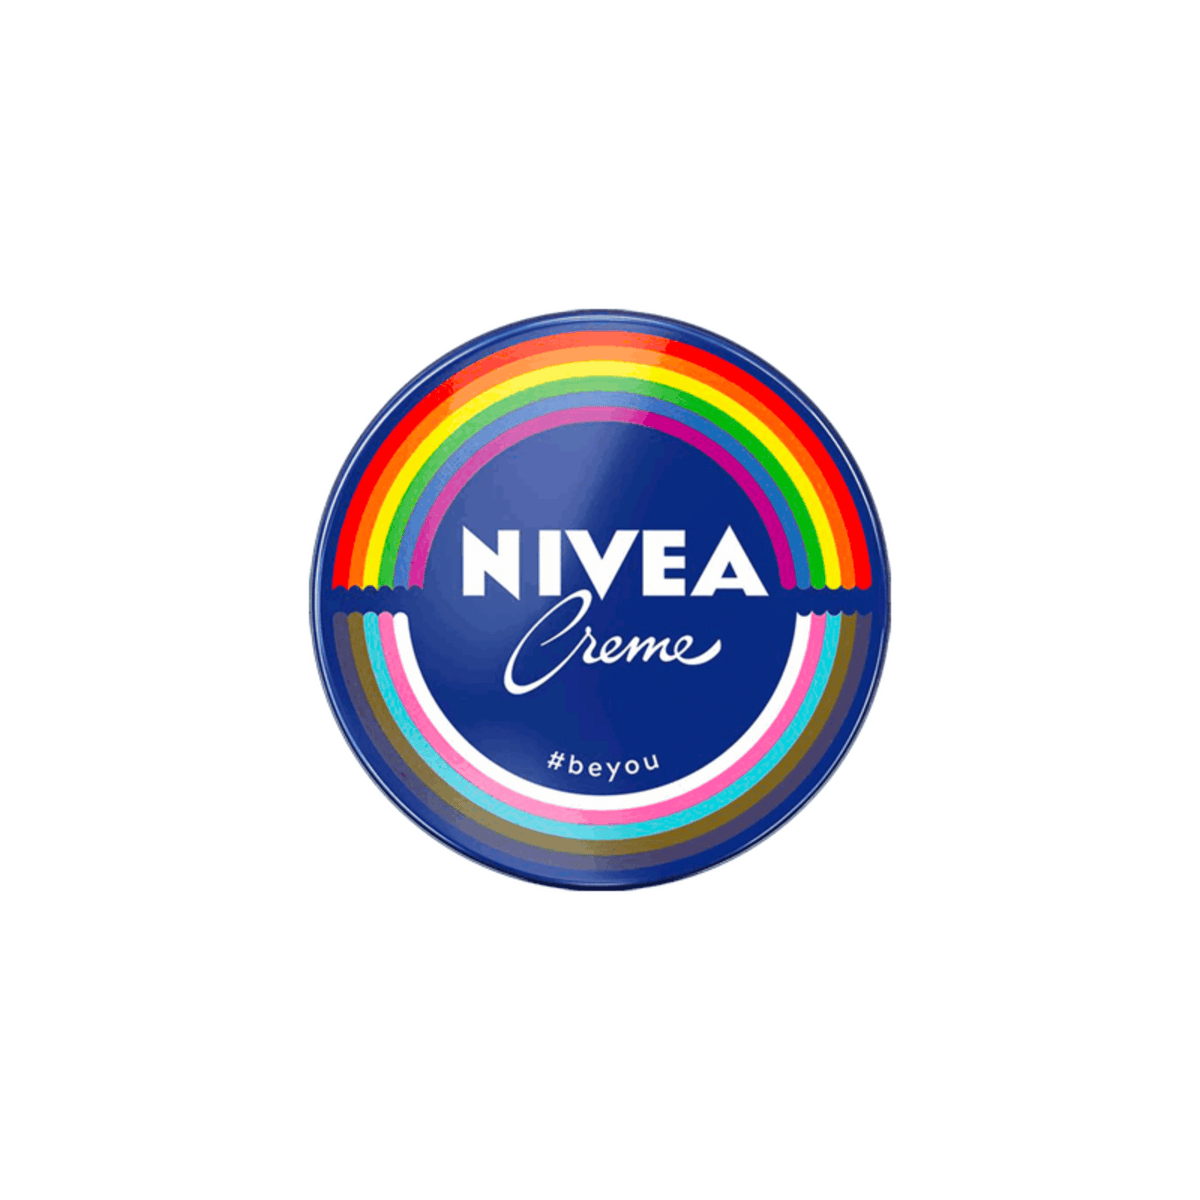 Primary Image of Nivea Creme